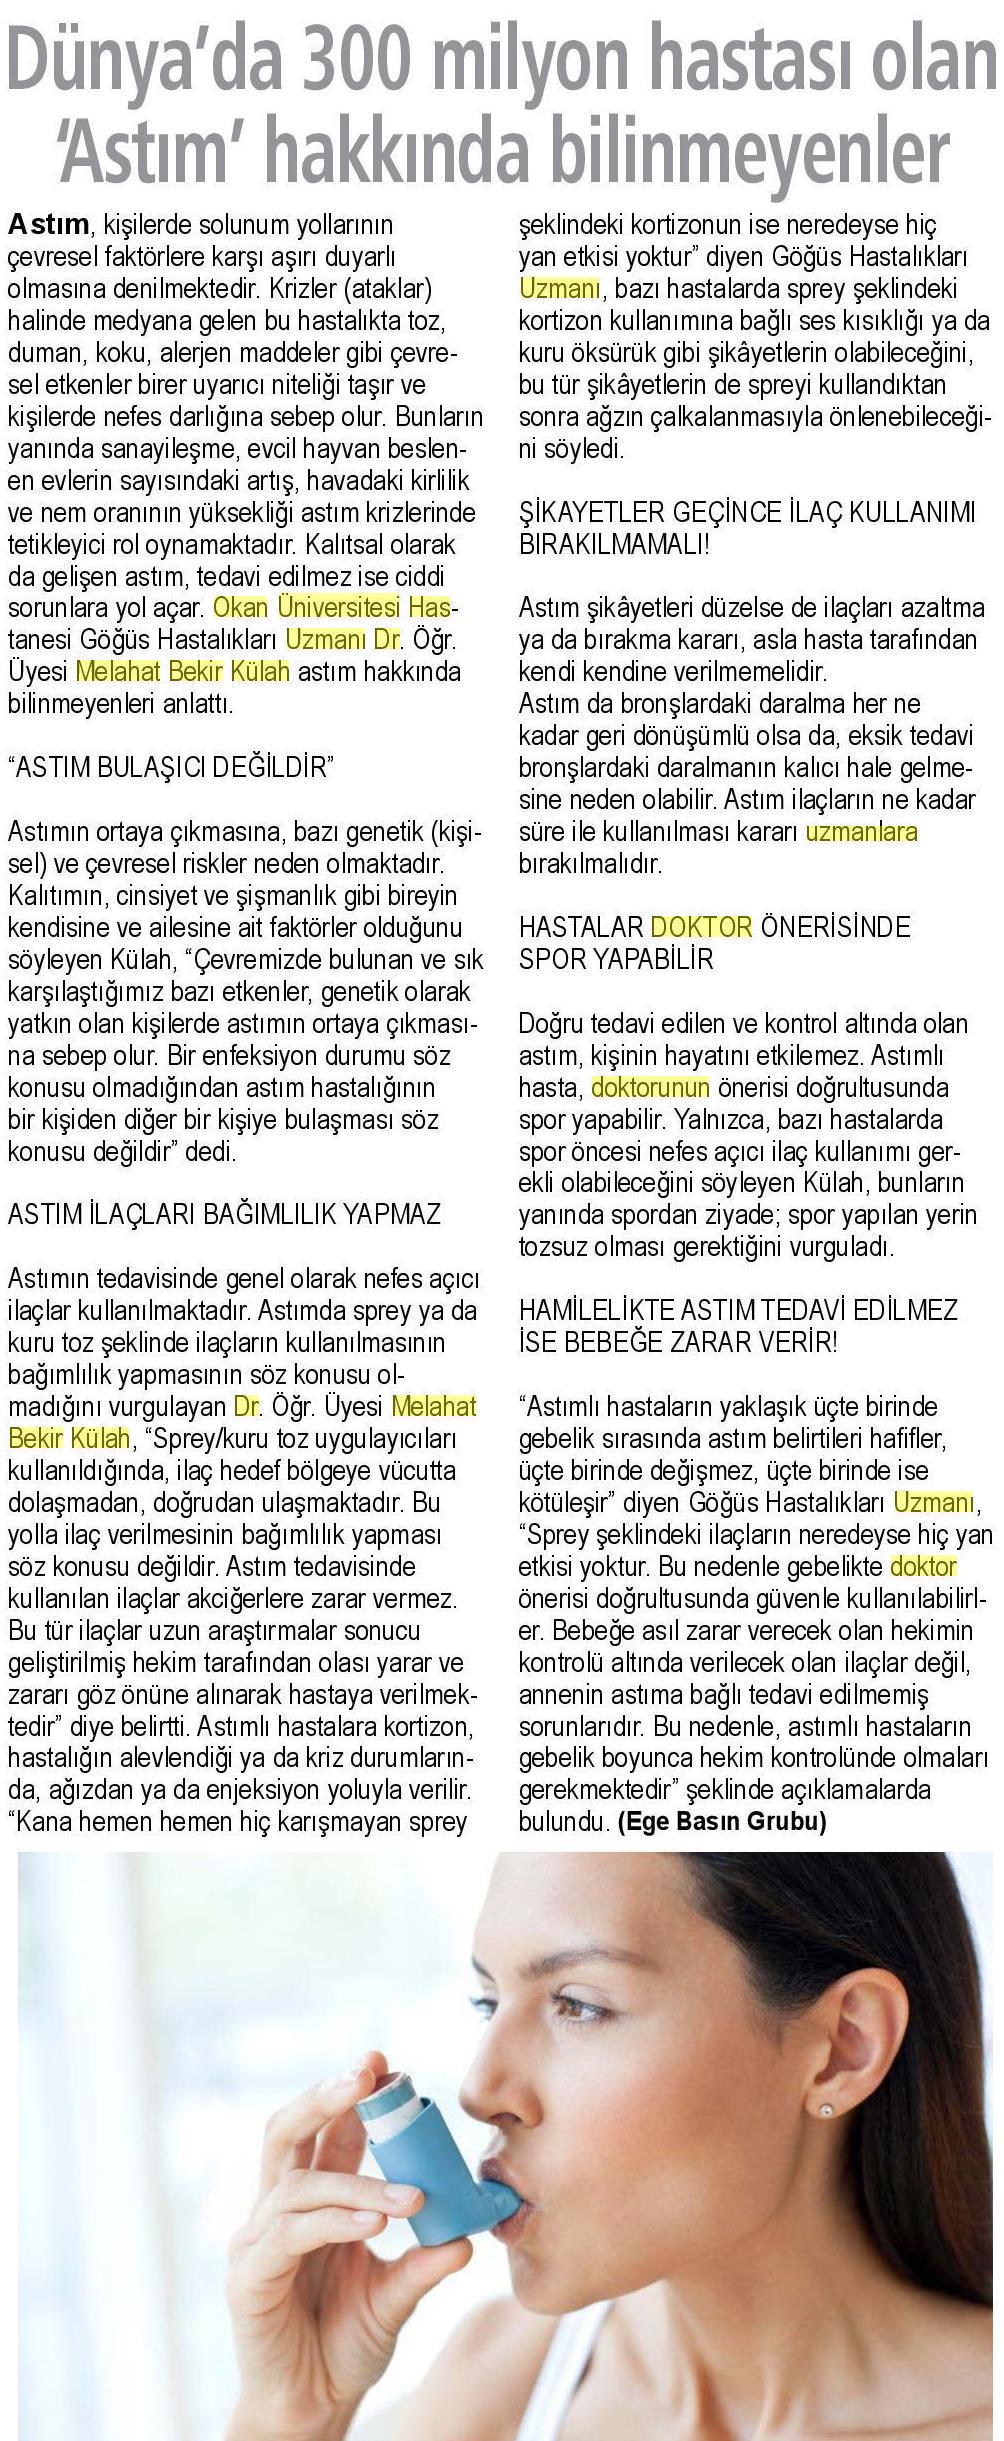 27.03.2019 Sağlık Gazetesi DÜNYA'DA 300 MİLYON HASTASI OLAN 'ASTIM' HAKKINDA BİLİNMEYENLER